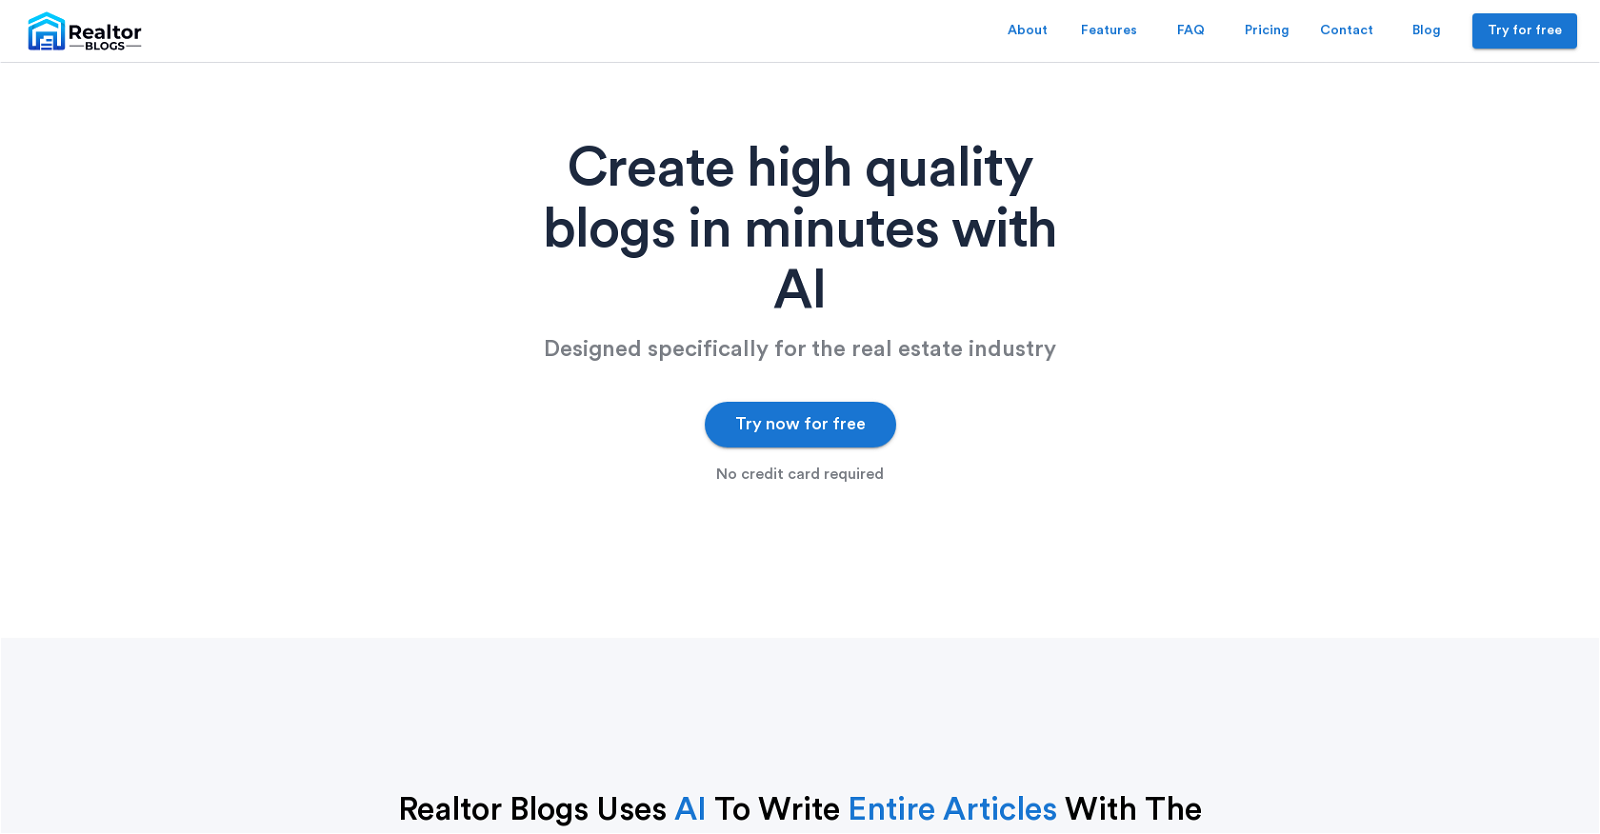 Realtor Blogs website